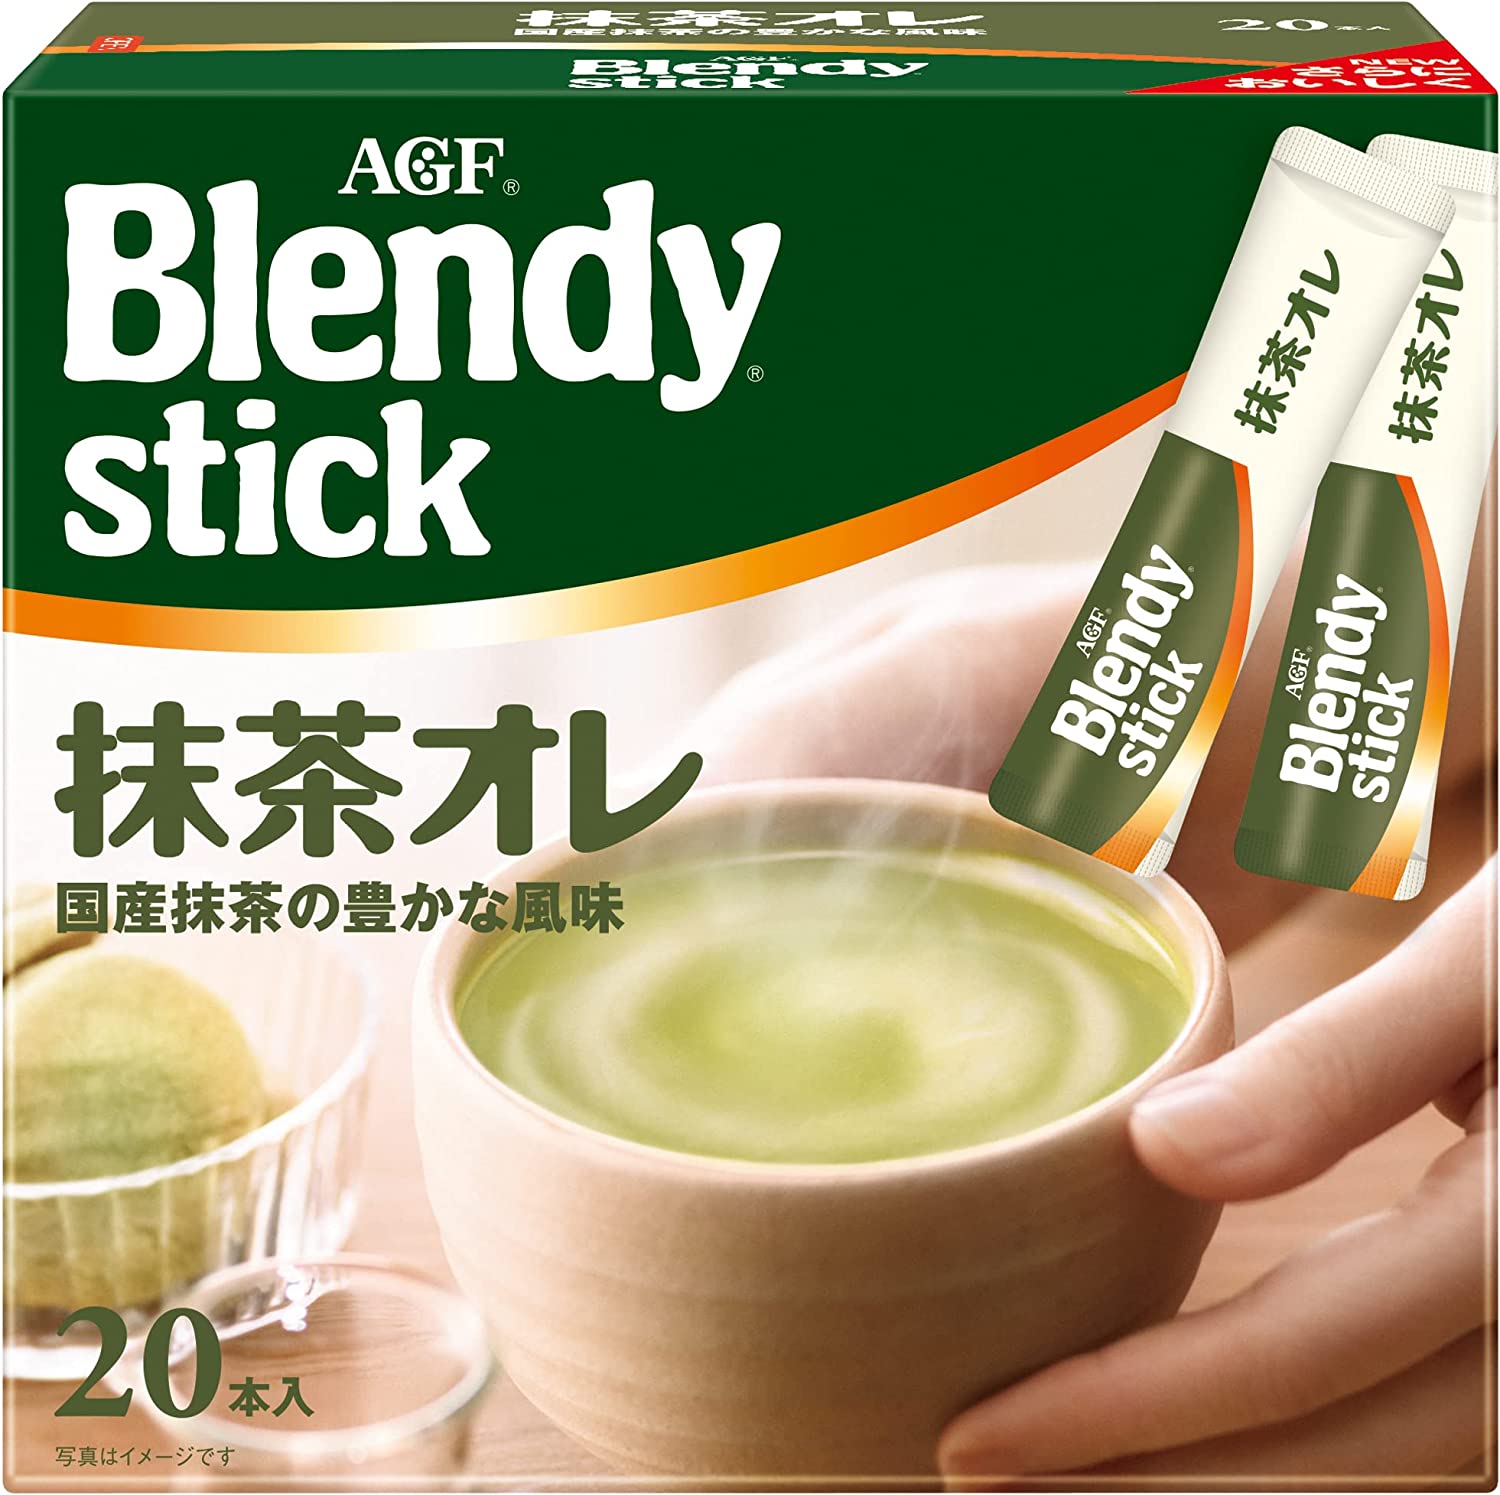 味之素AGF Blendy Ajinomoto Agf Blendy Stick Matcha礦石20件